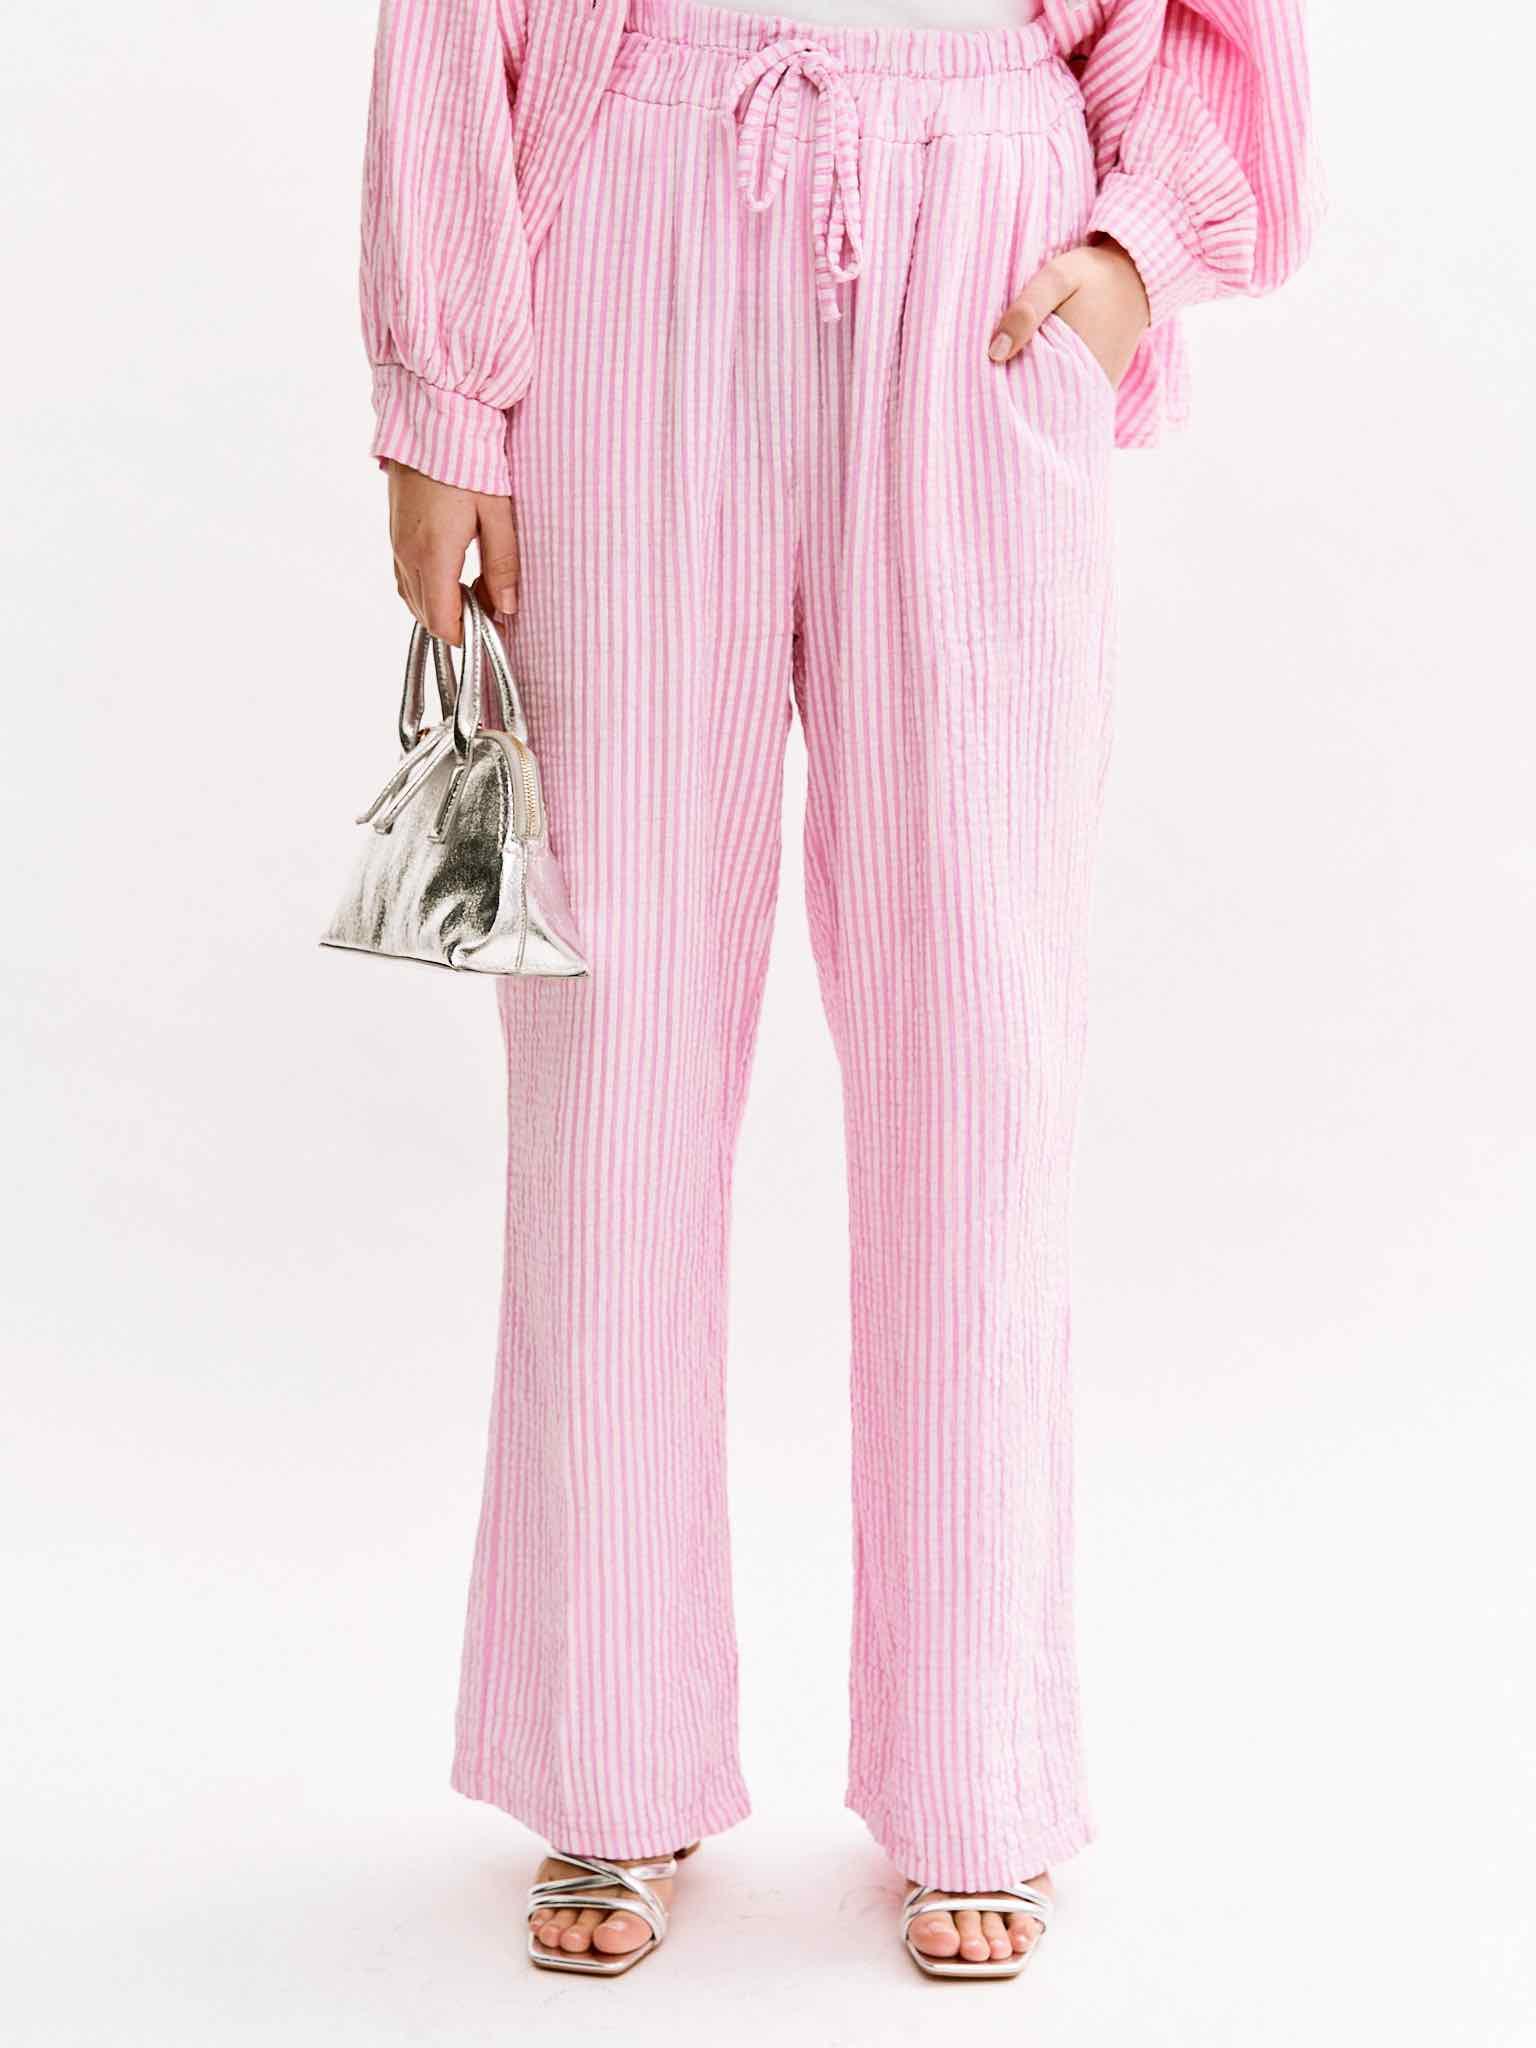 Gestreifte Musselin Hose für Damen in Baby Pink von Maingold Basics